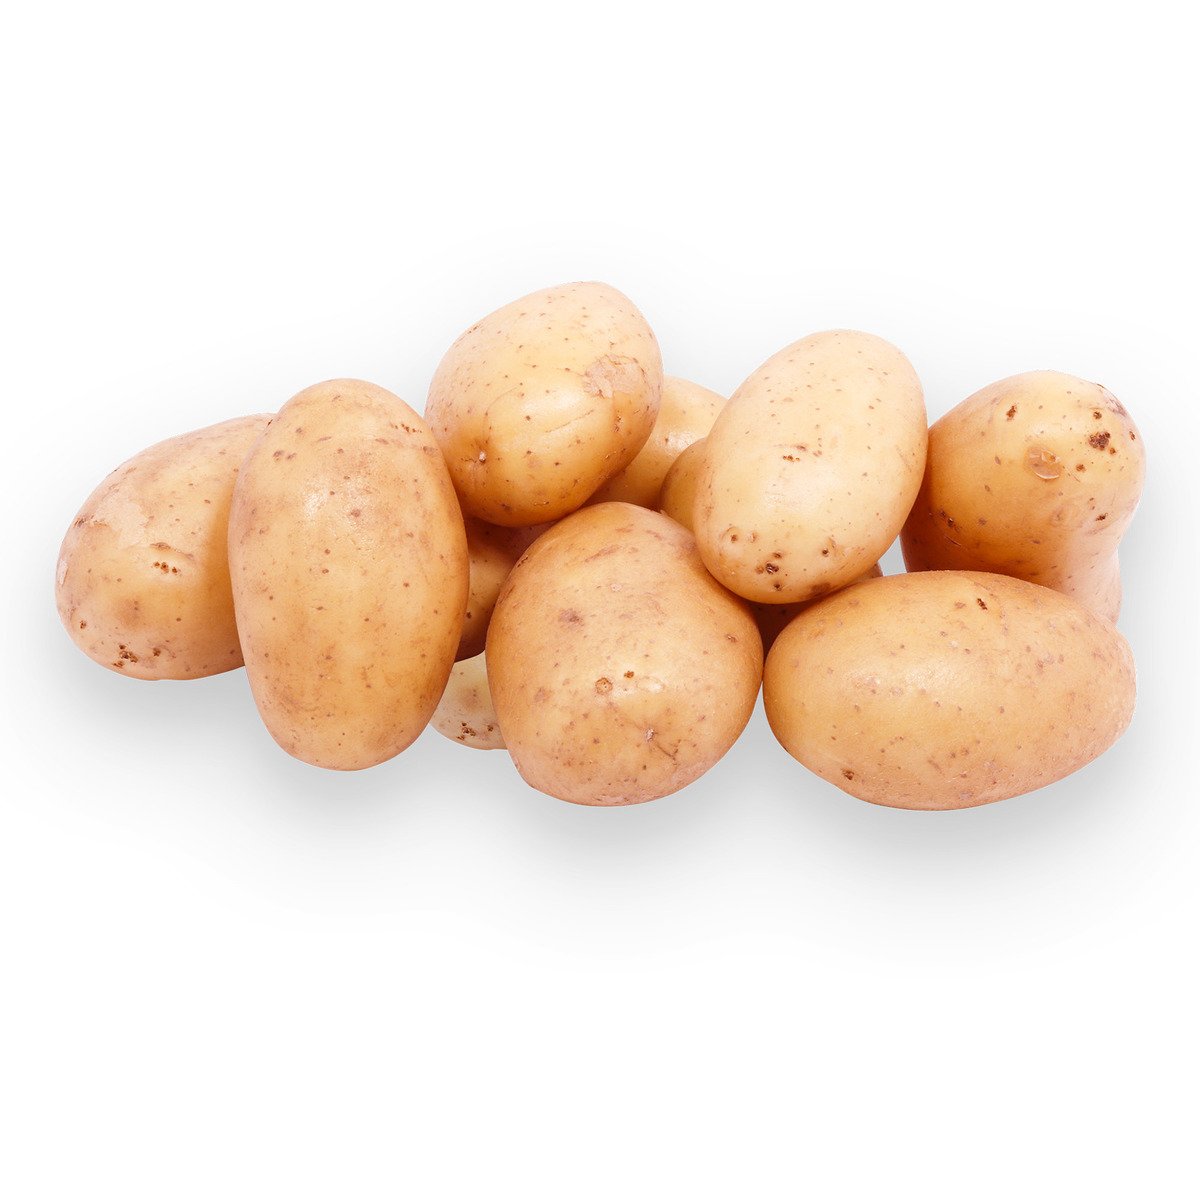 Potato Pakistan 1 kg